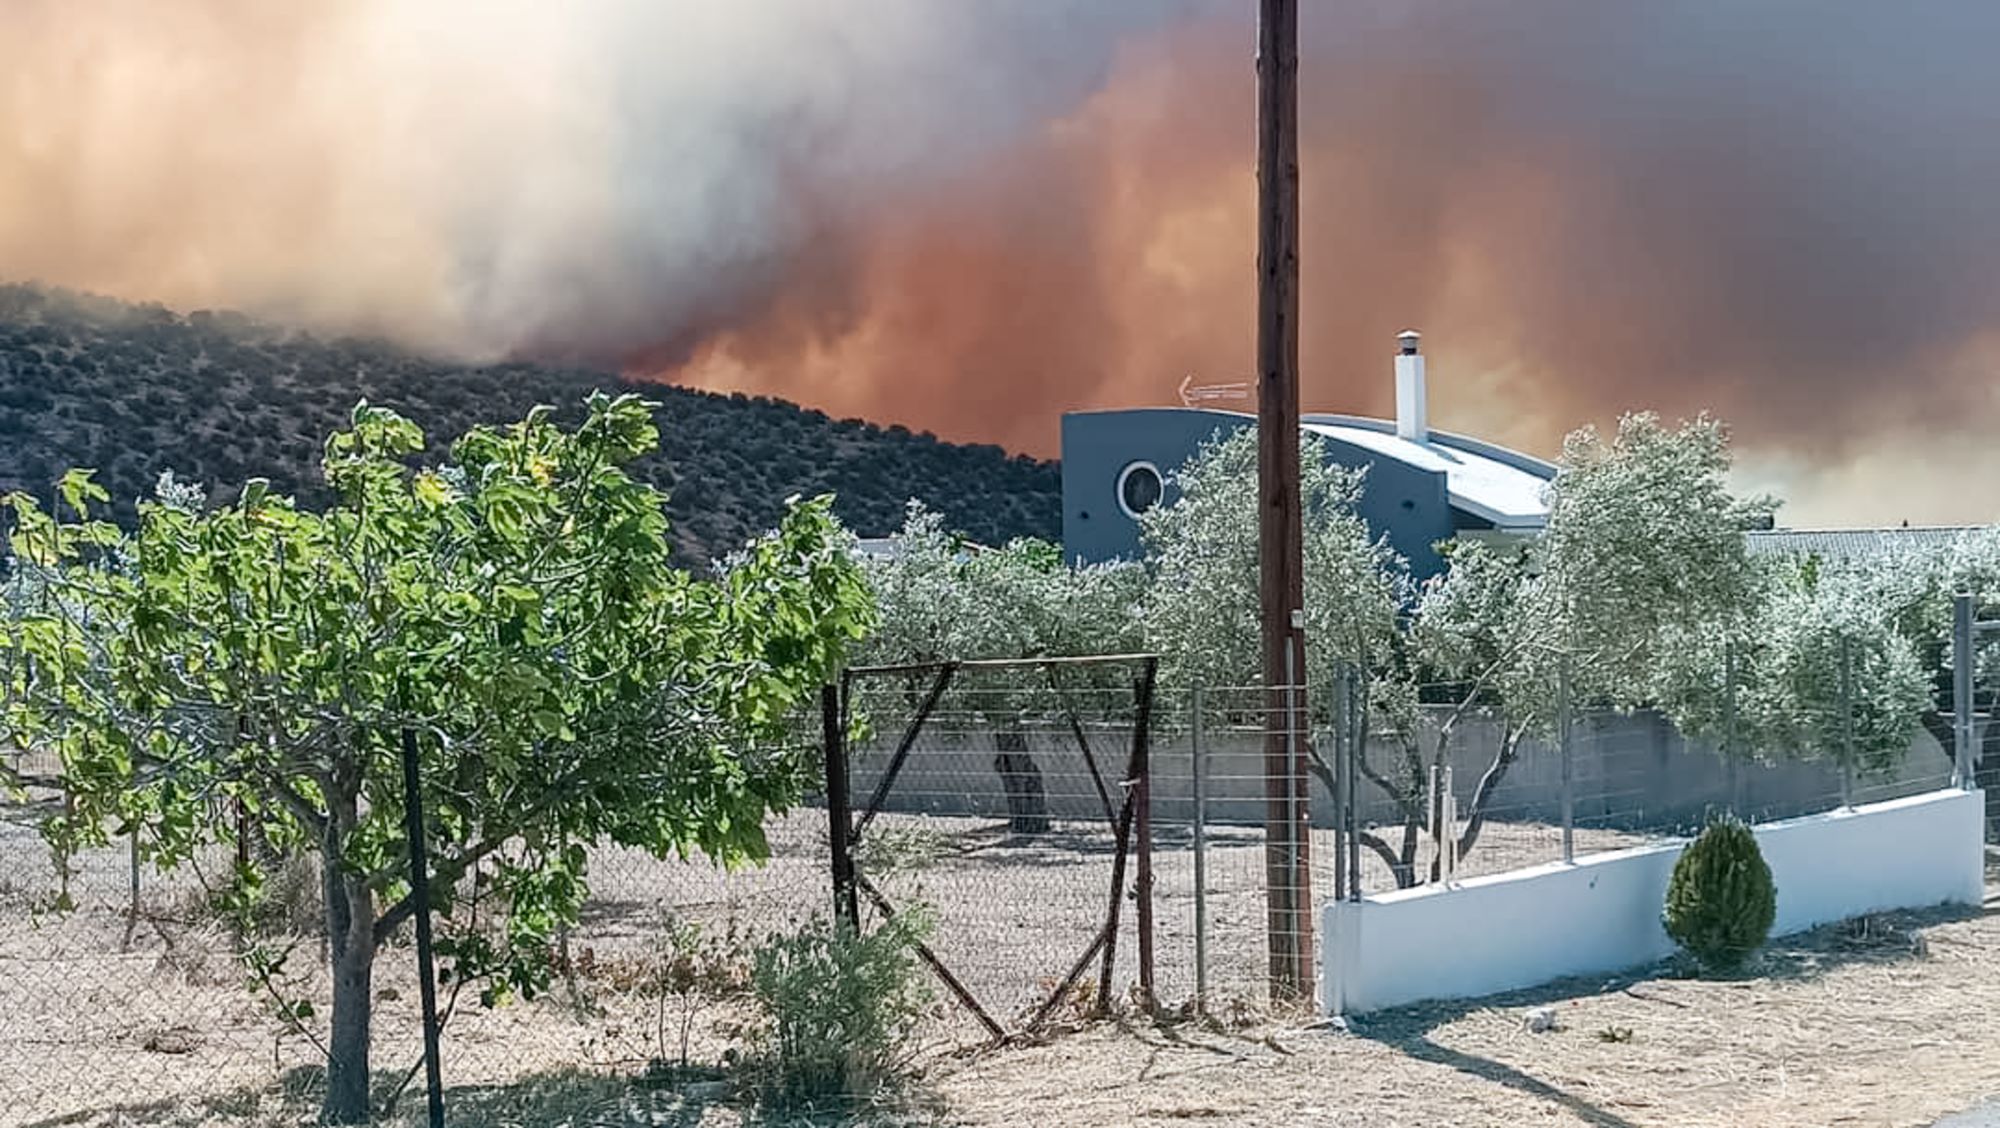 Φωτιά στη Βοιωτία: Εκκενώθηκαν τέσσερα χωριά στο Δίστομο